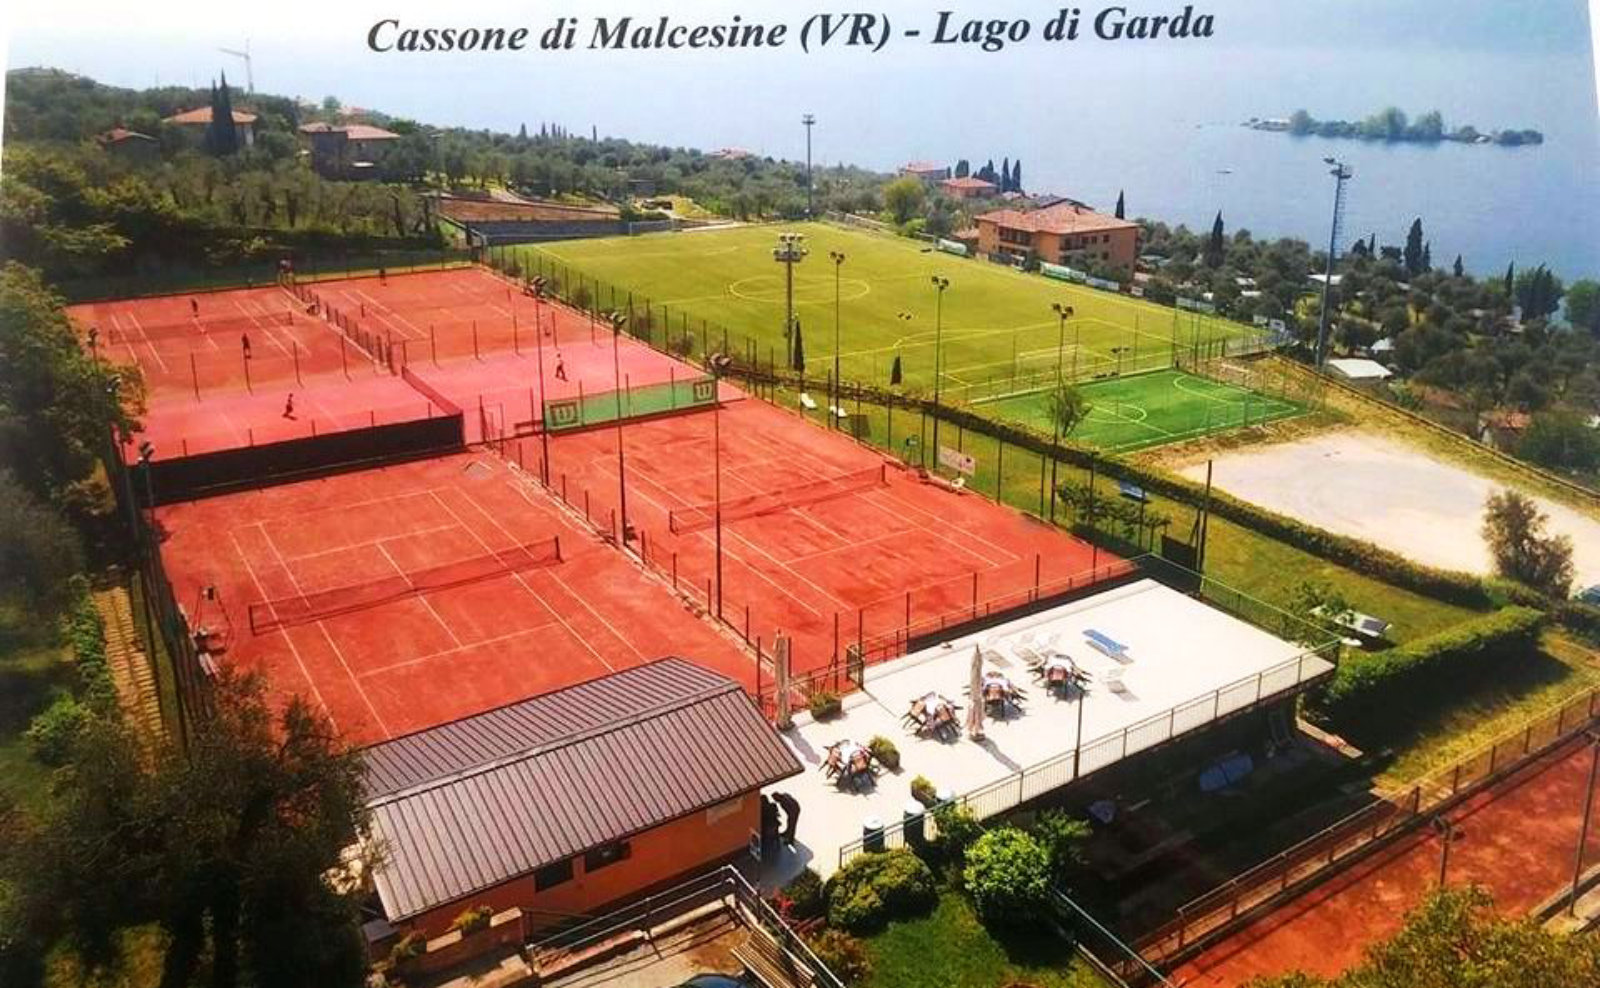 Tennis & football center Cassone